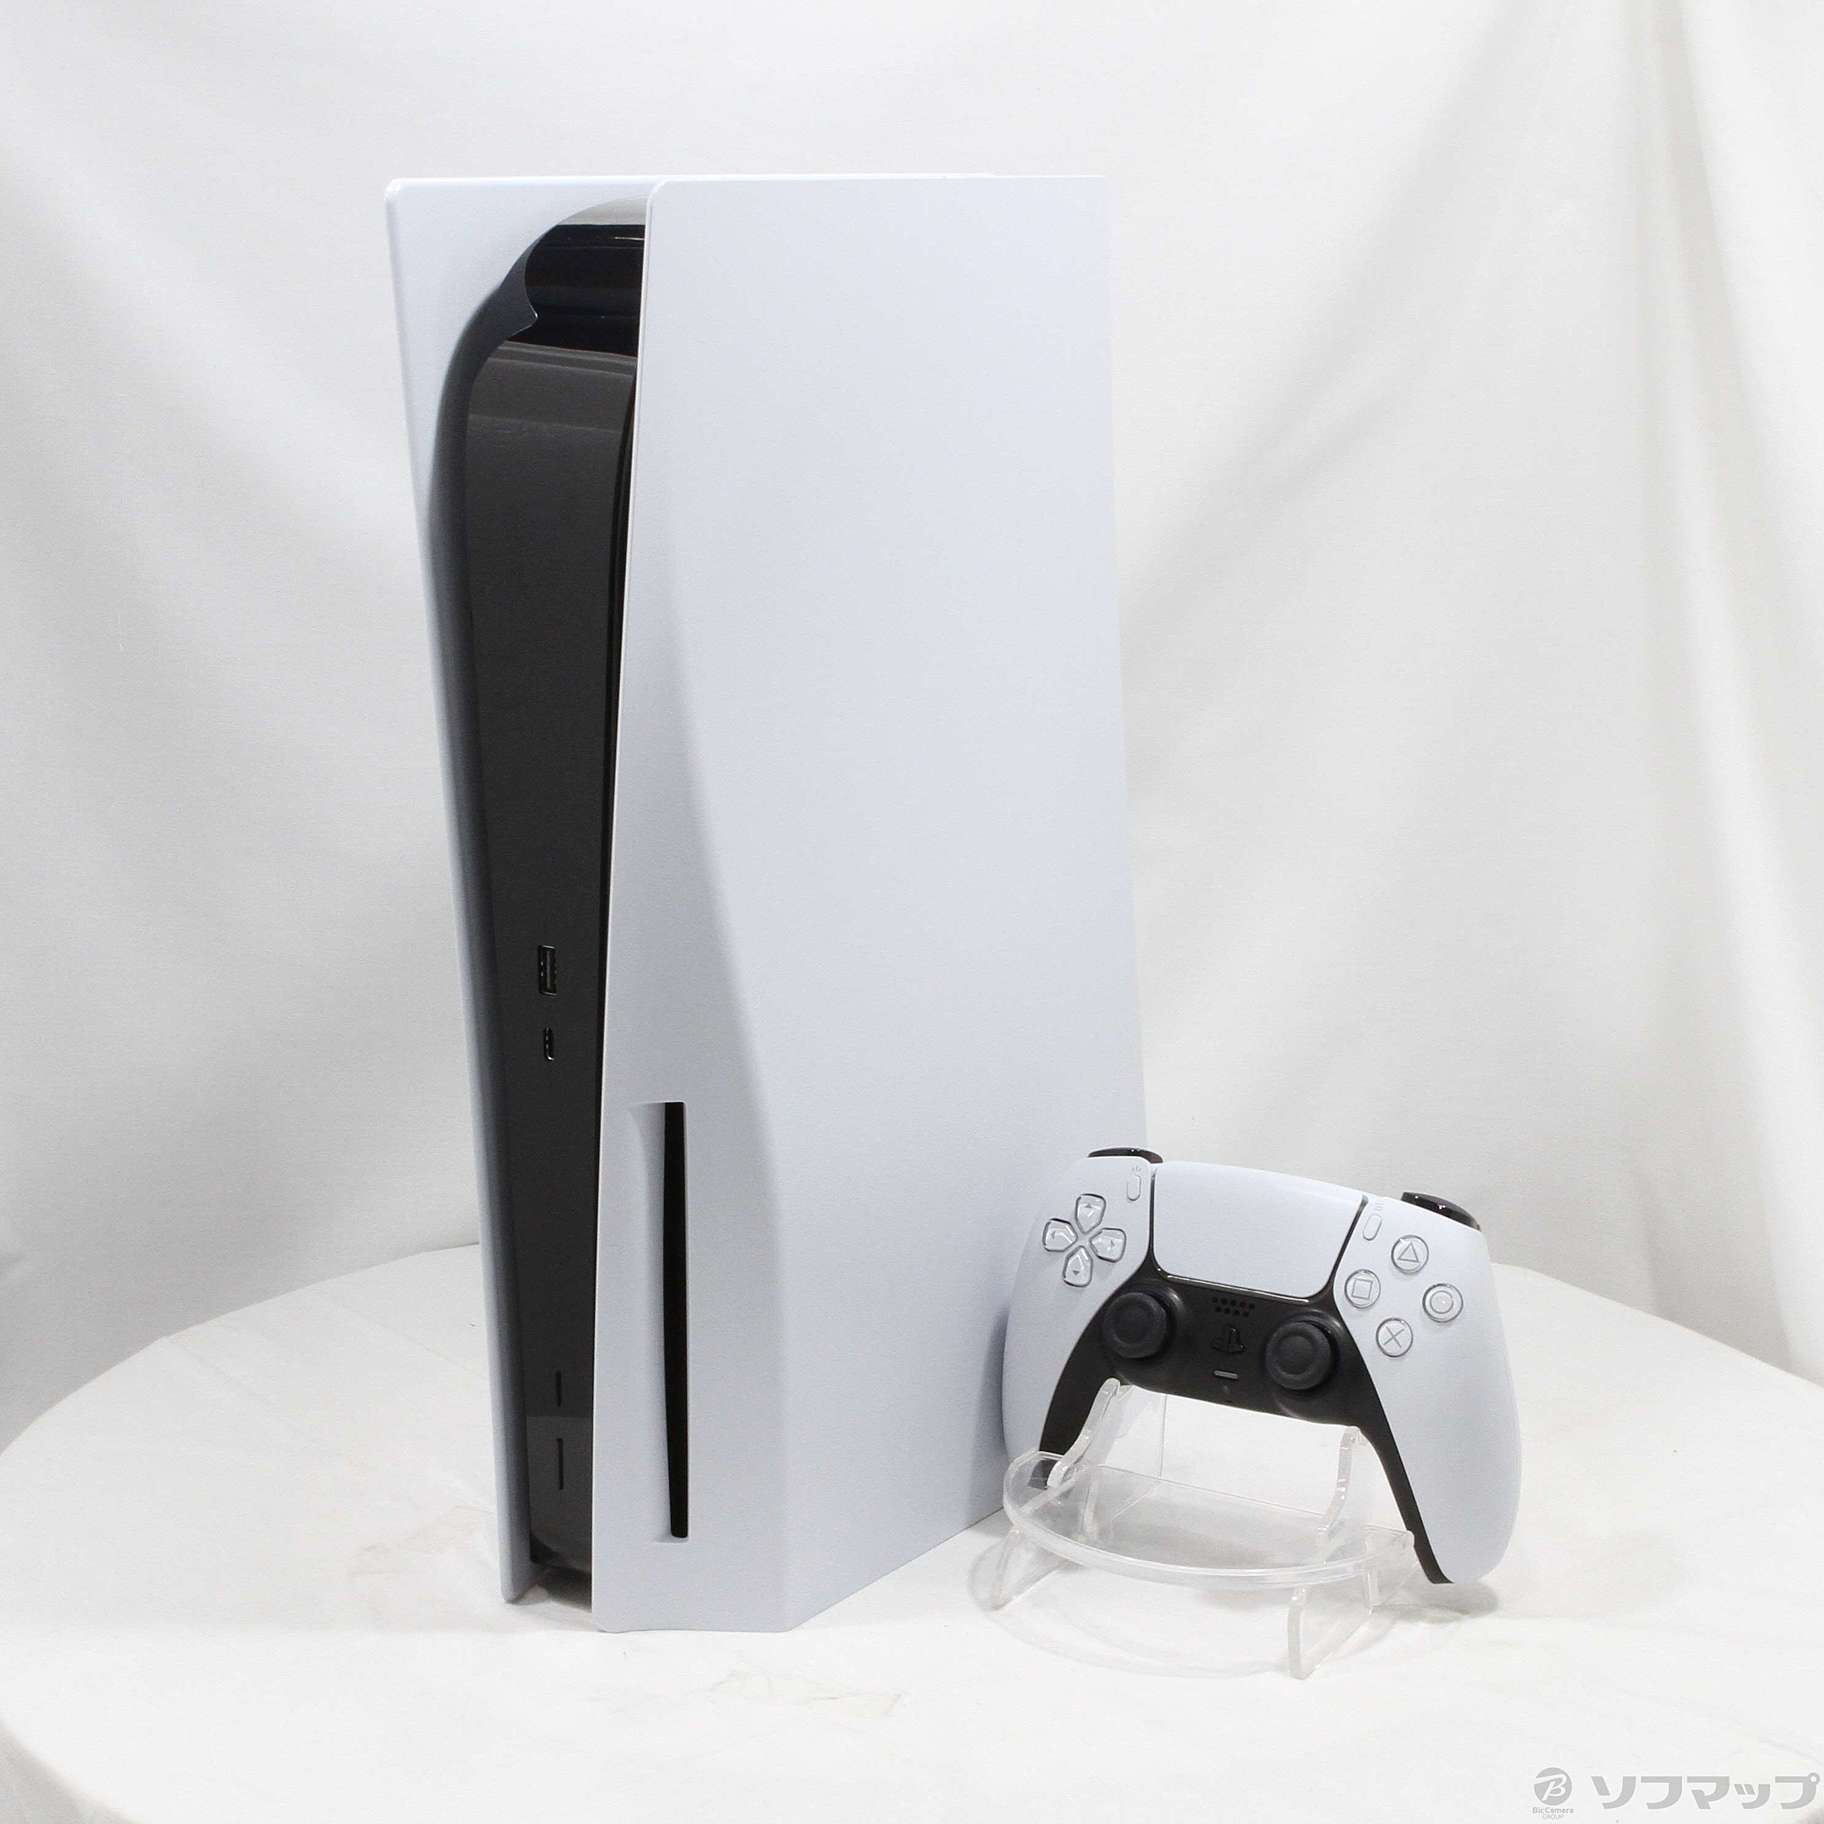 〔中古品〕 PlayStation5 ディスクドライブ搭載モデル CFI-1200A01